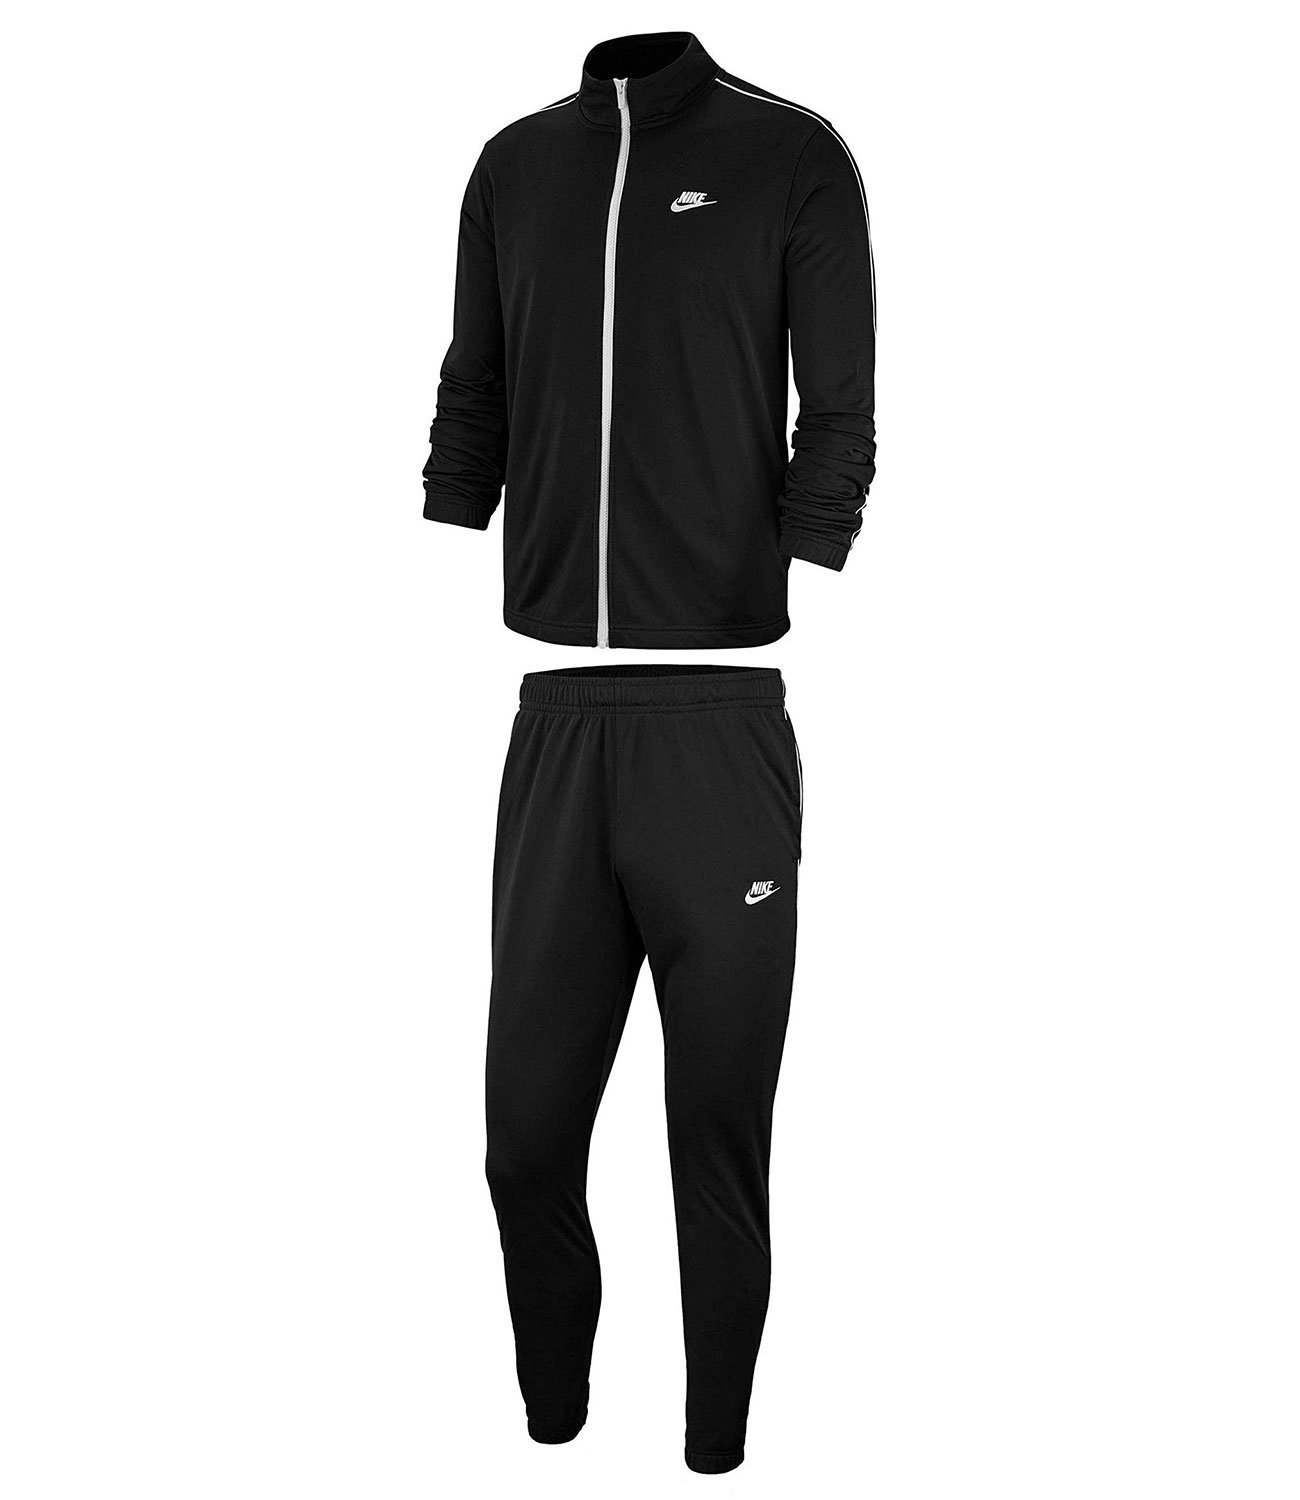 Спортивный костюм m. Черный спортивный костюм Nike bv3034-010. Nike bv3034-010. Черный спортивный костюм Nike Woven 886511-010. Nike Tracksuit костюм мужской.